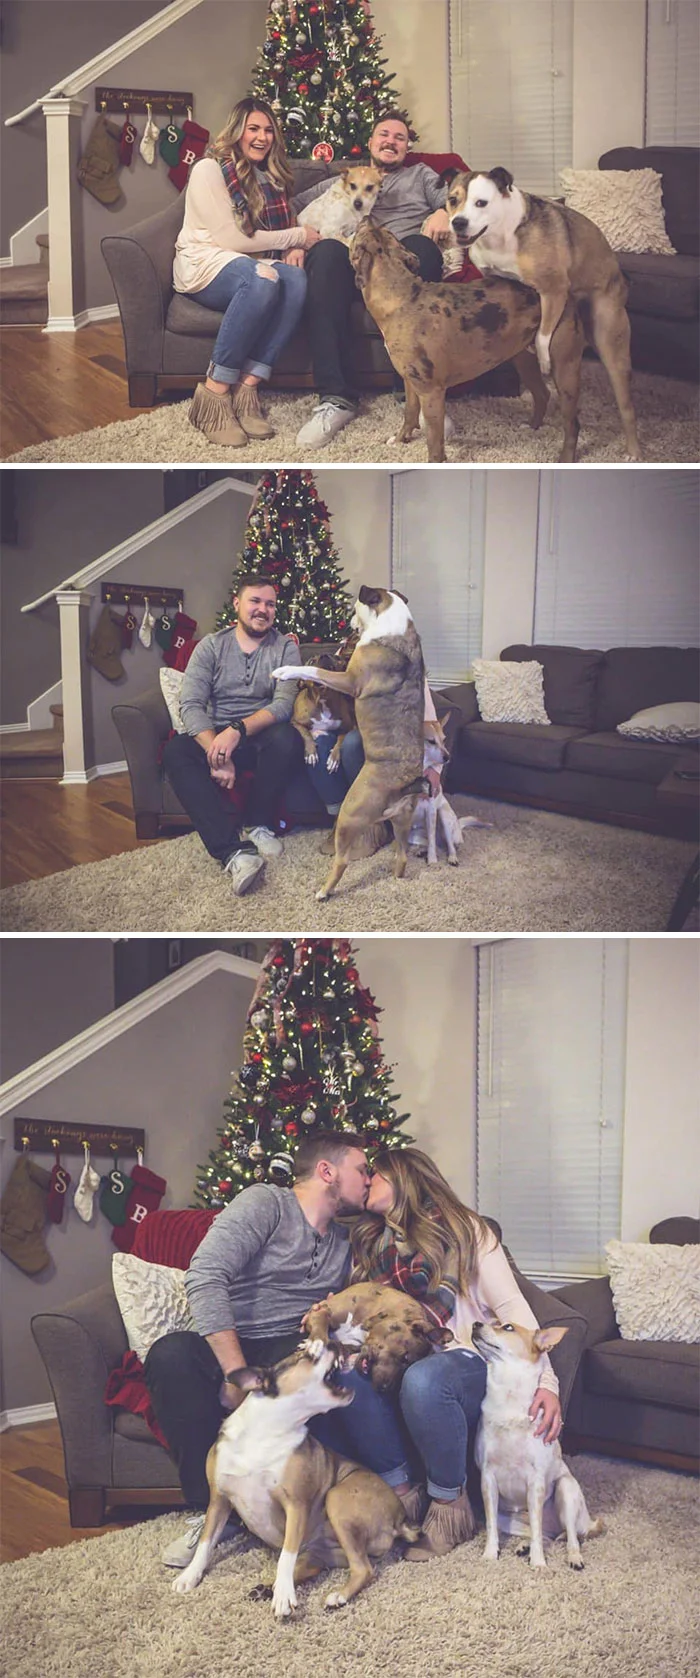 Галерея дурацких рождественских фотографий, которые испортили собаки - фото 6